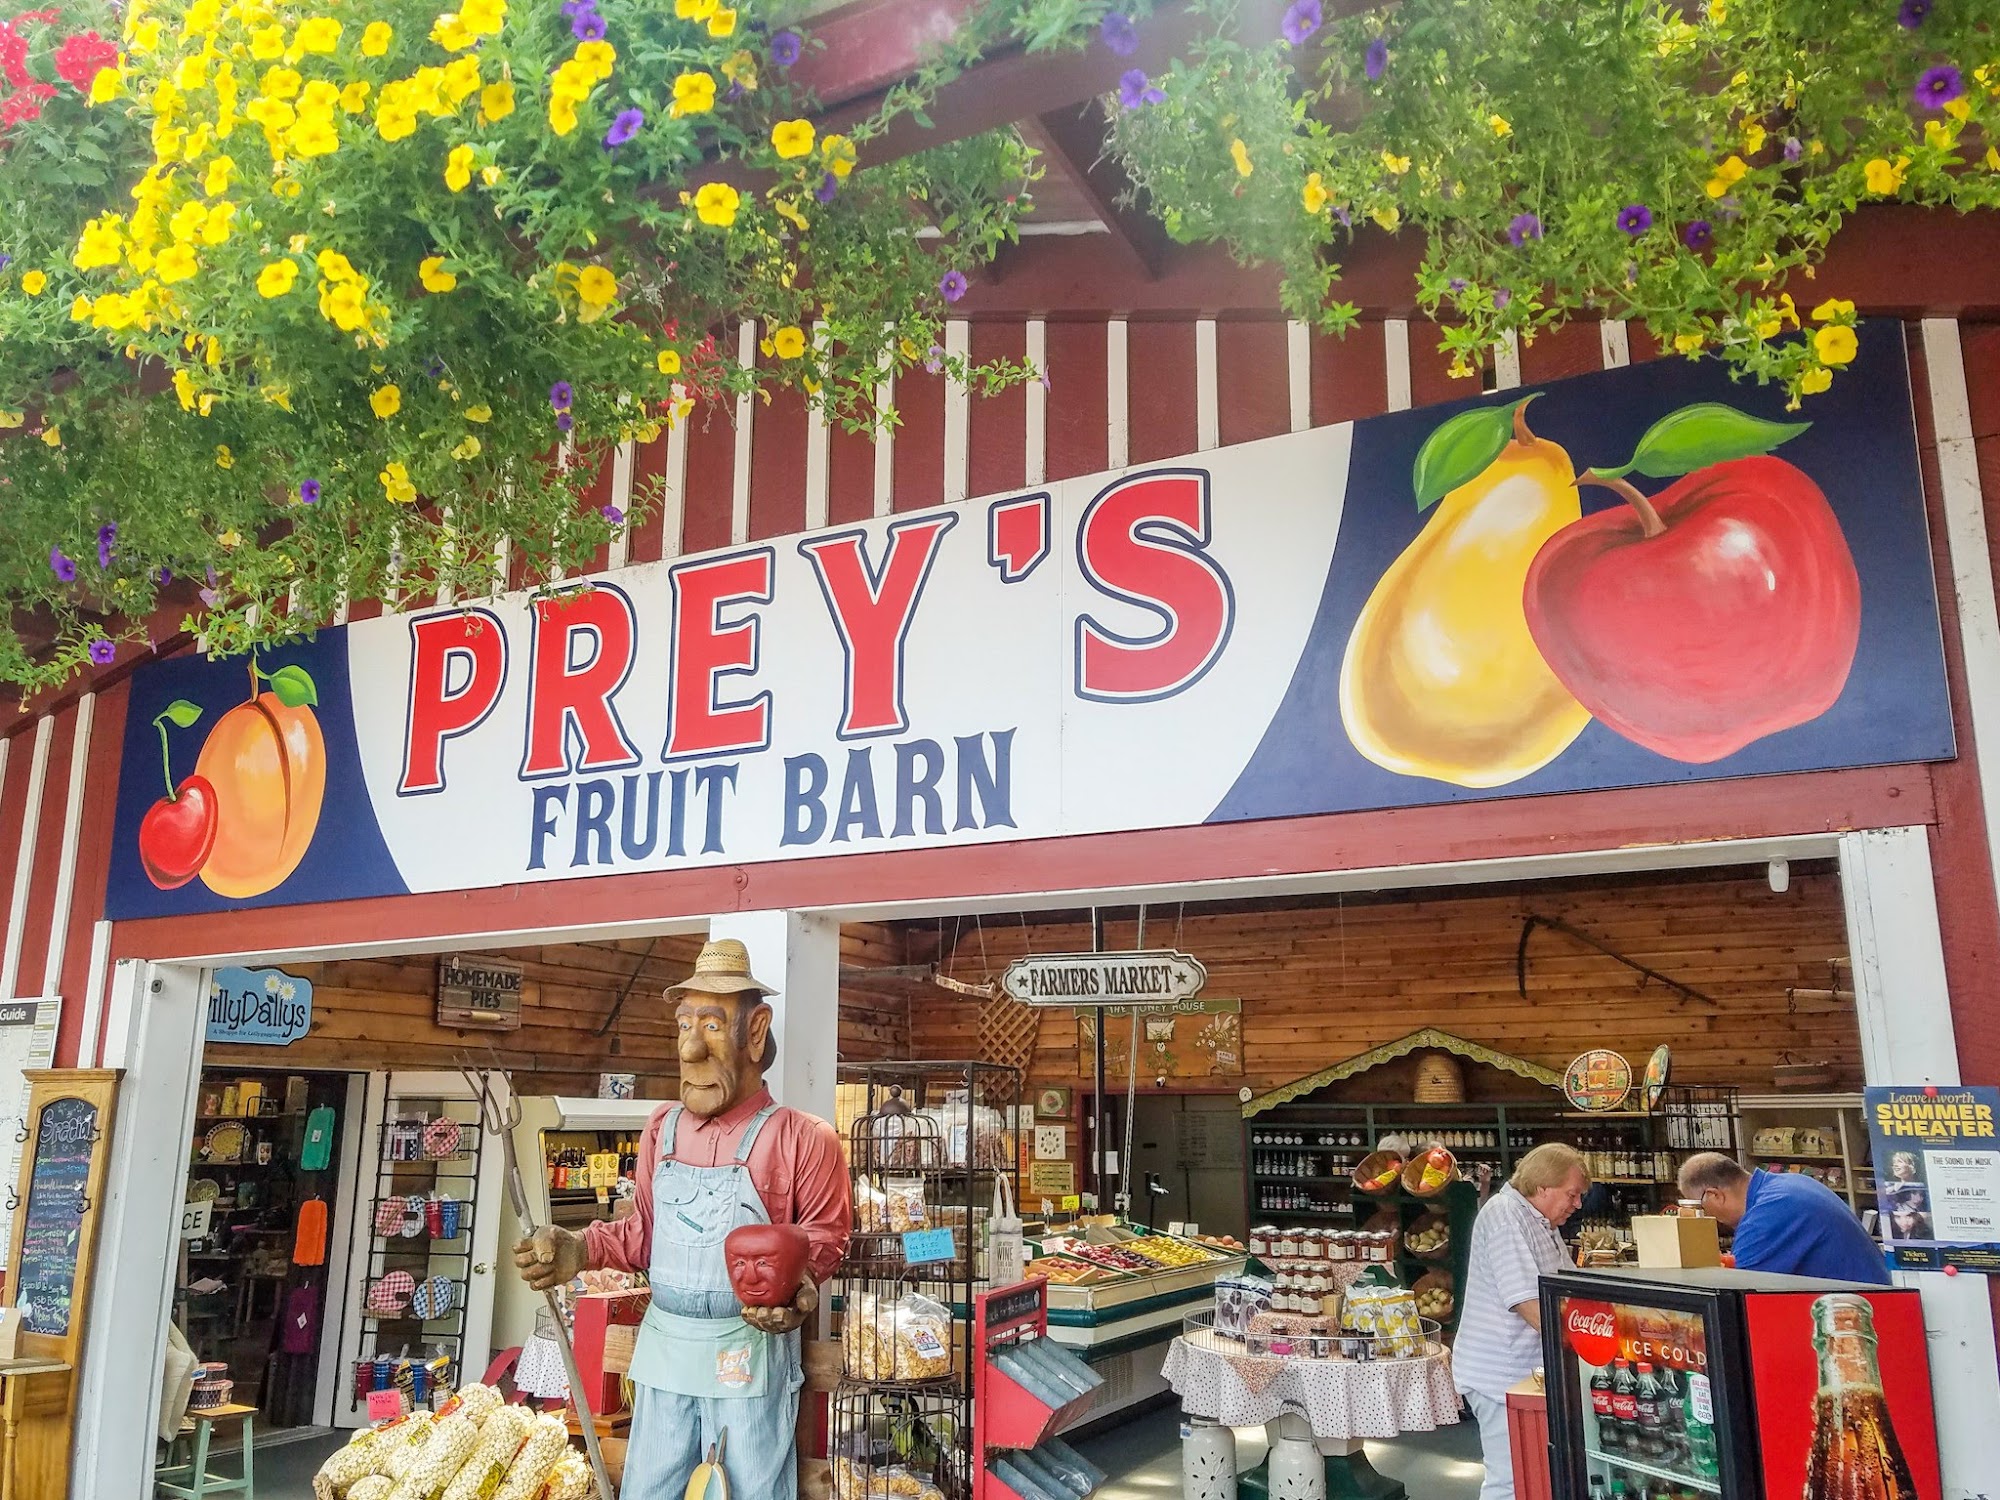 Prey's Fruit Barn